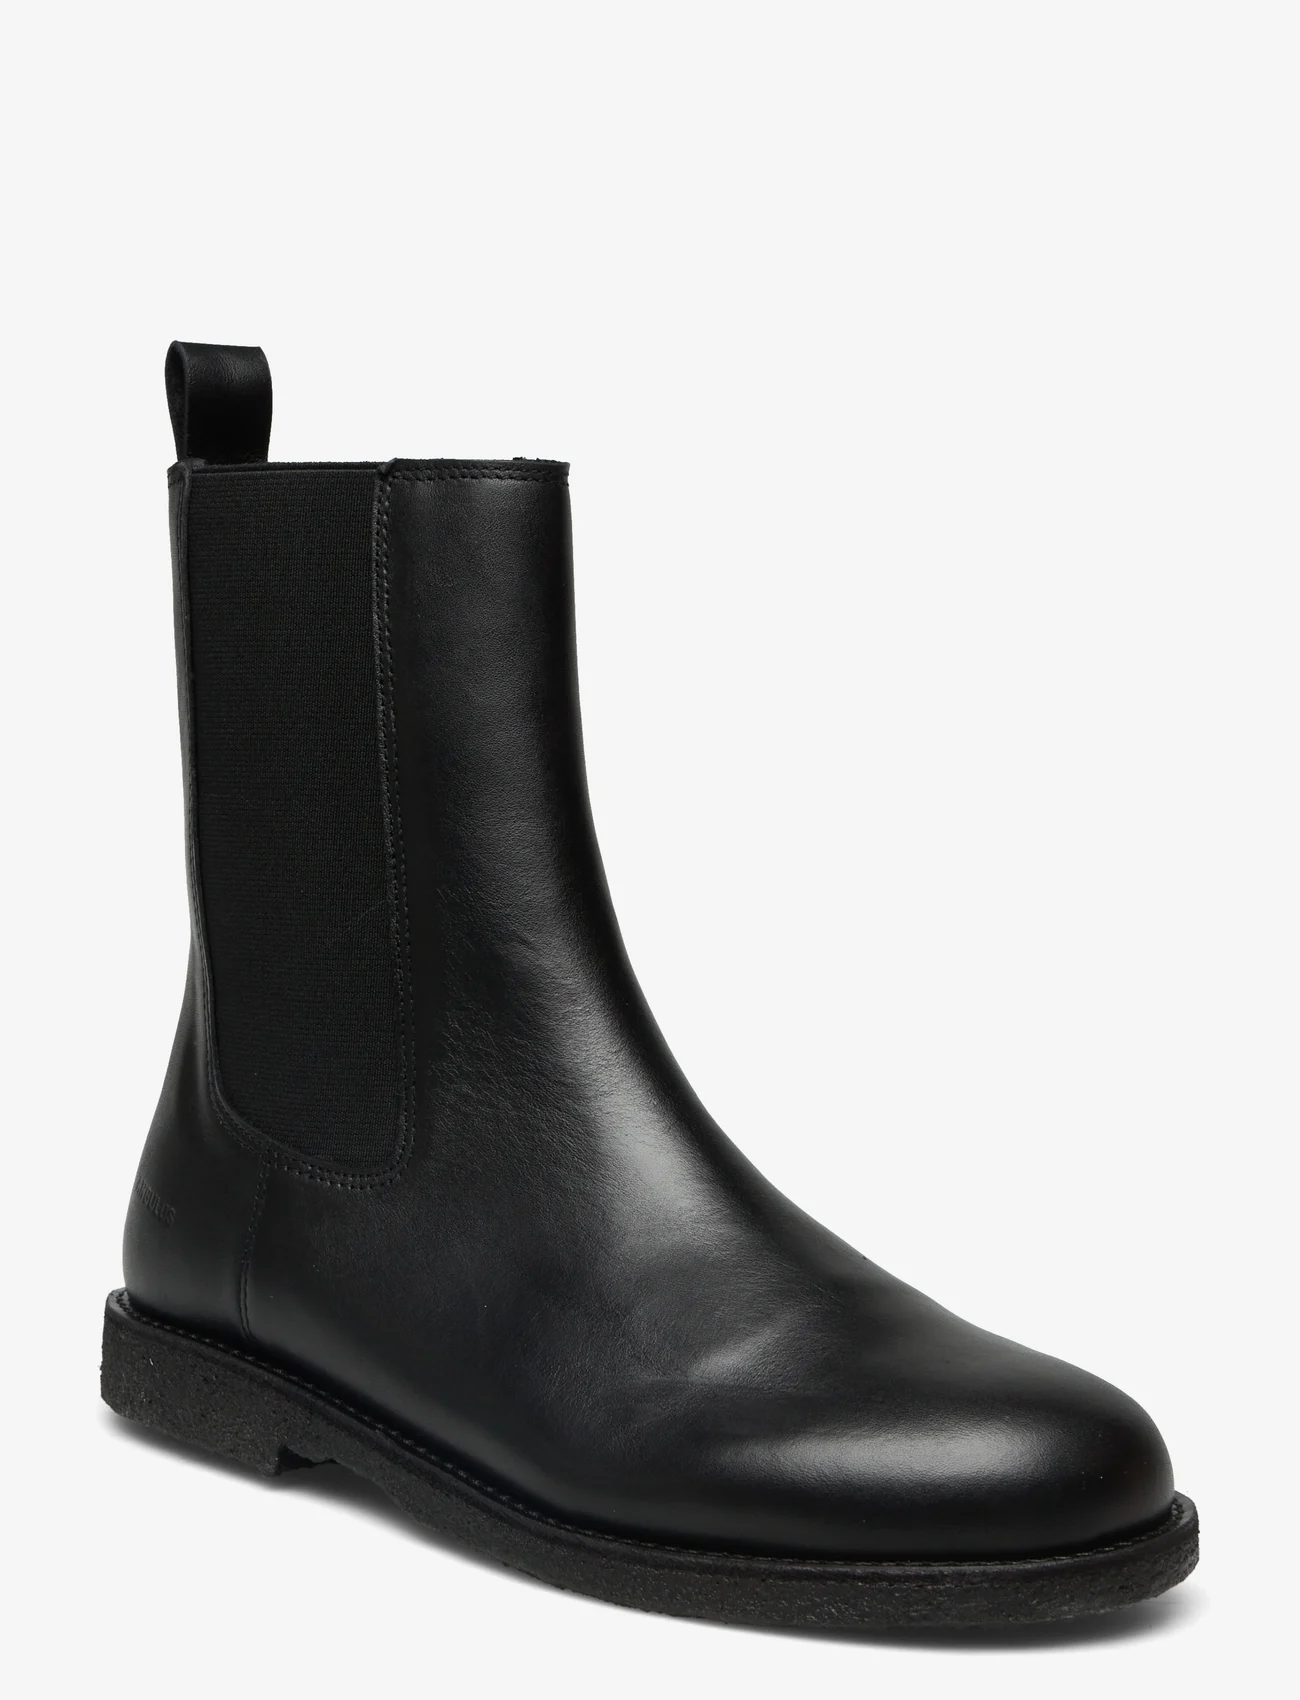 ANGULUS - Boots - flat - chelsea boots - 1604/001 black/black - 0